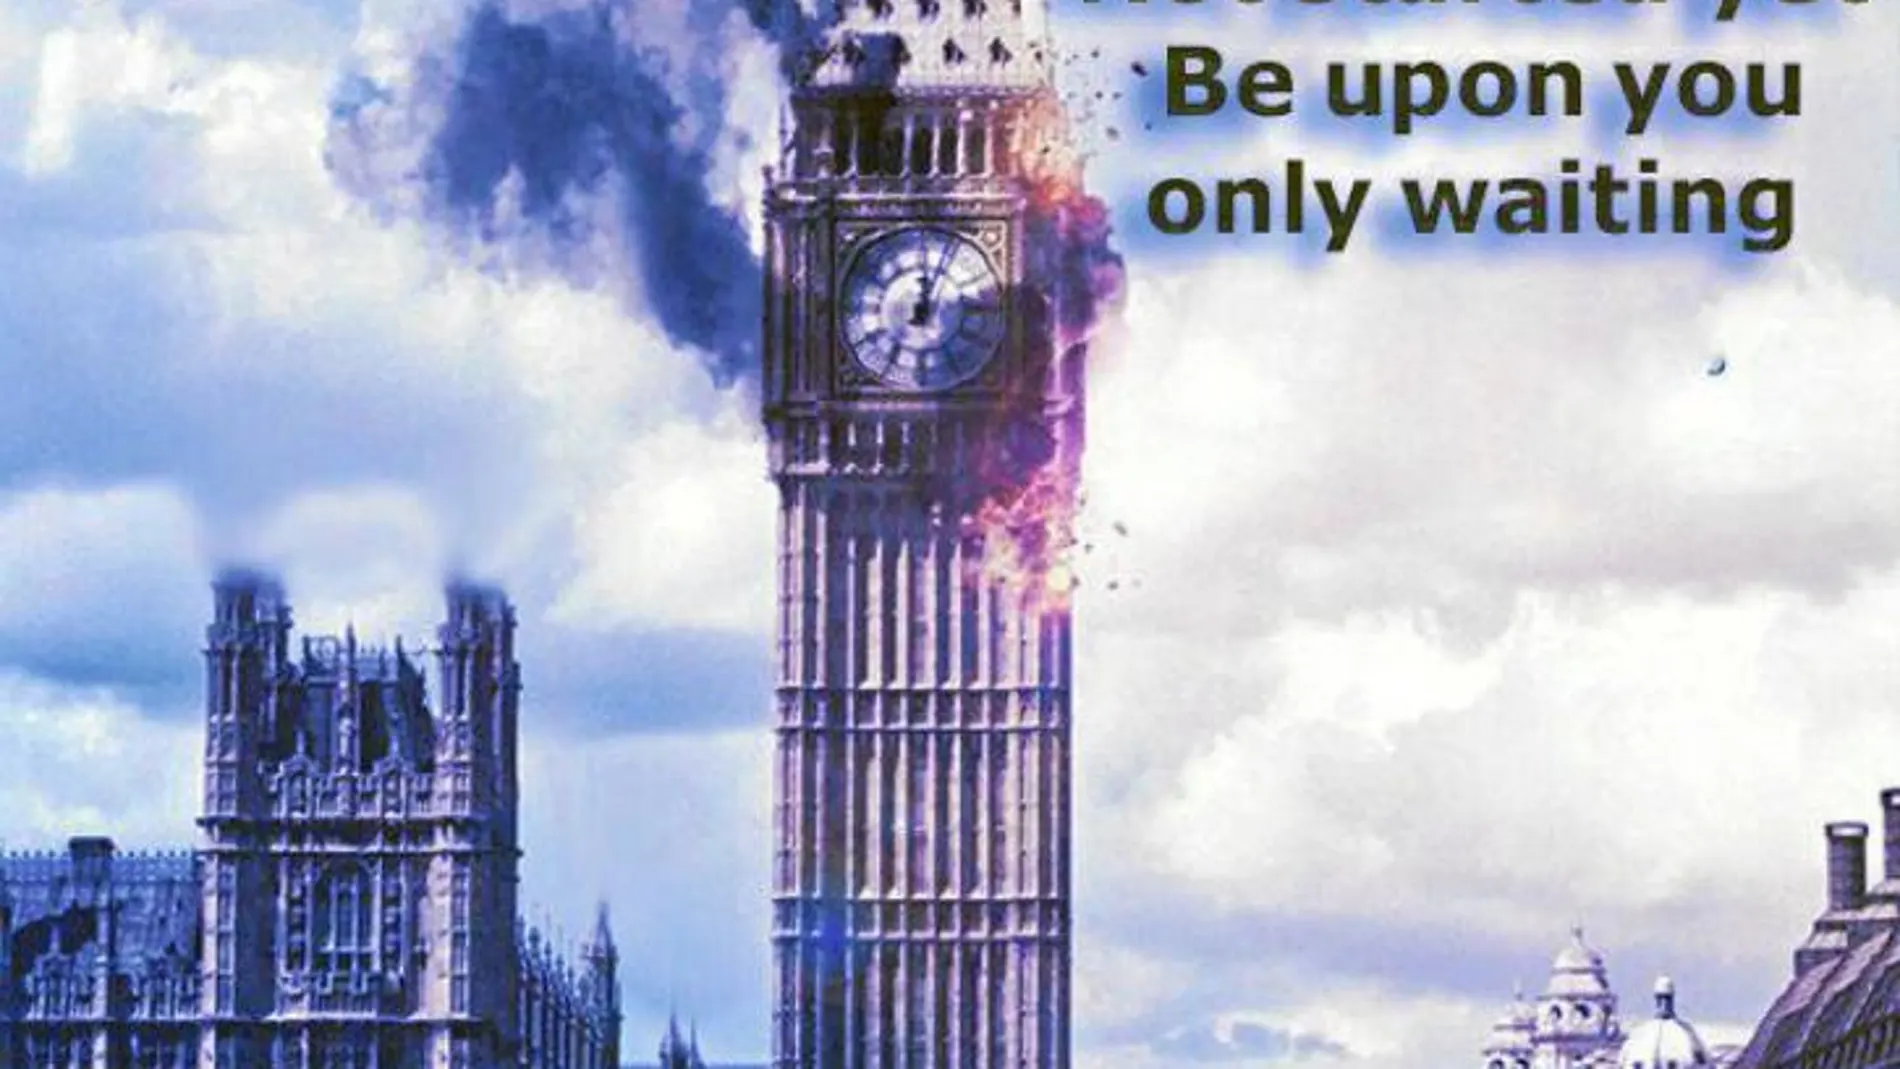 SITE interceptó y publicó una de las imágenes que circularon ayer entre las redes yihadistas para celebrar el ataque terrorista de Londres